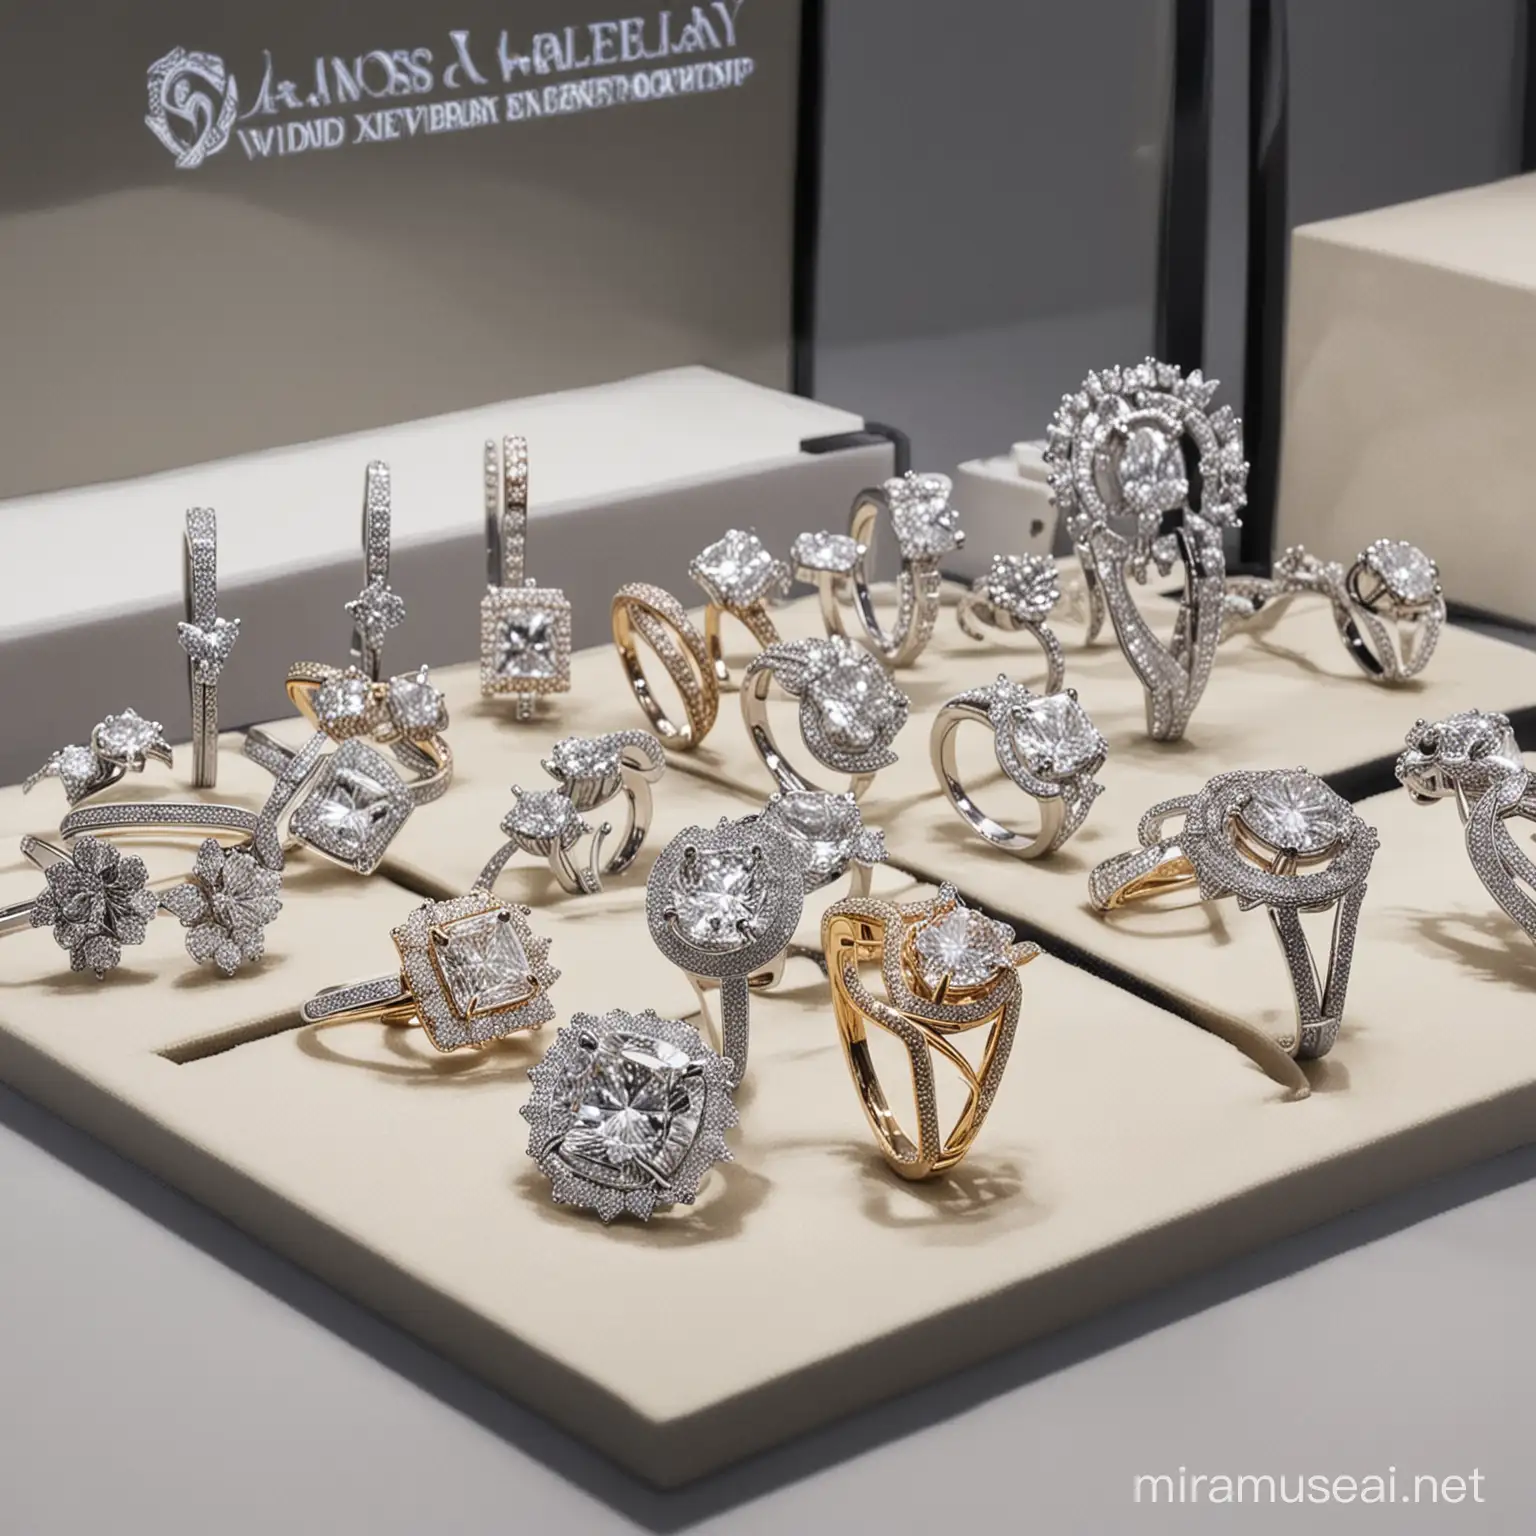 Indoor Diamond Jewelry Exhibition